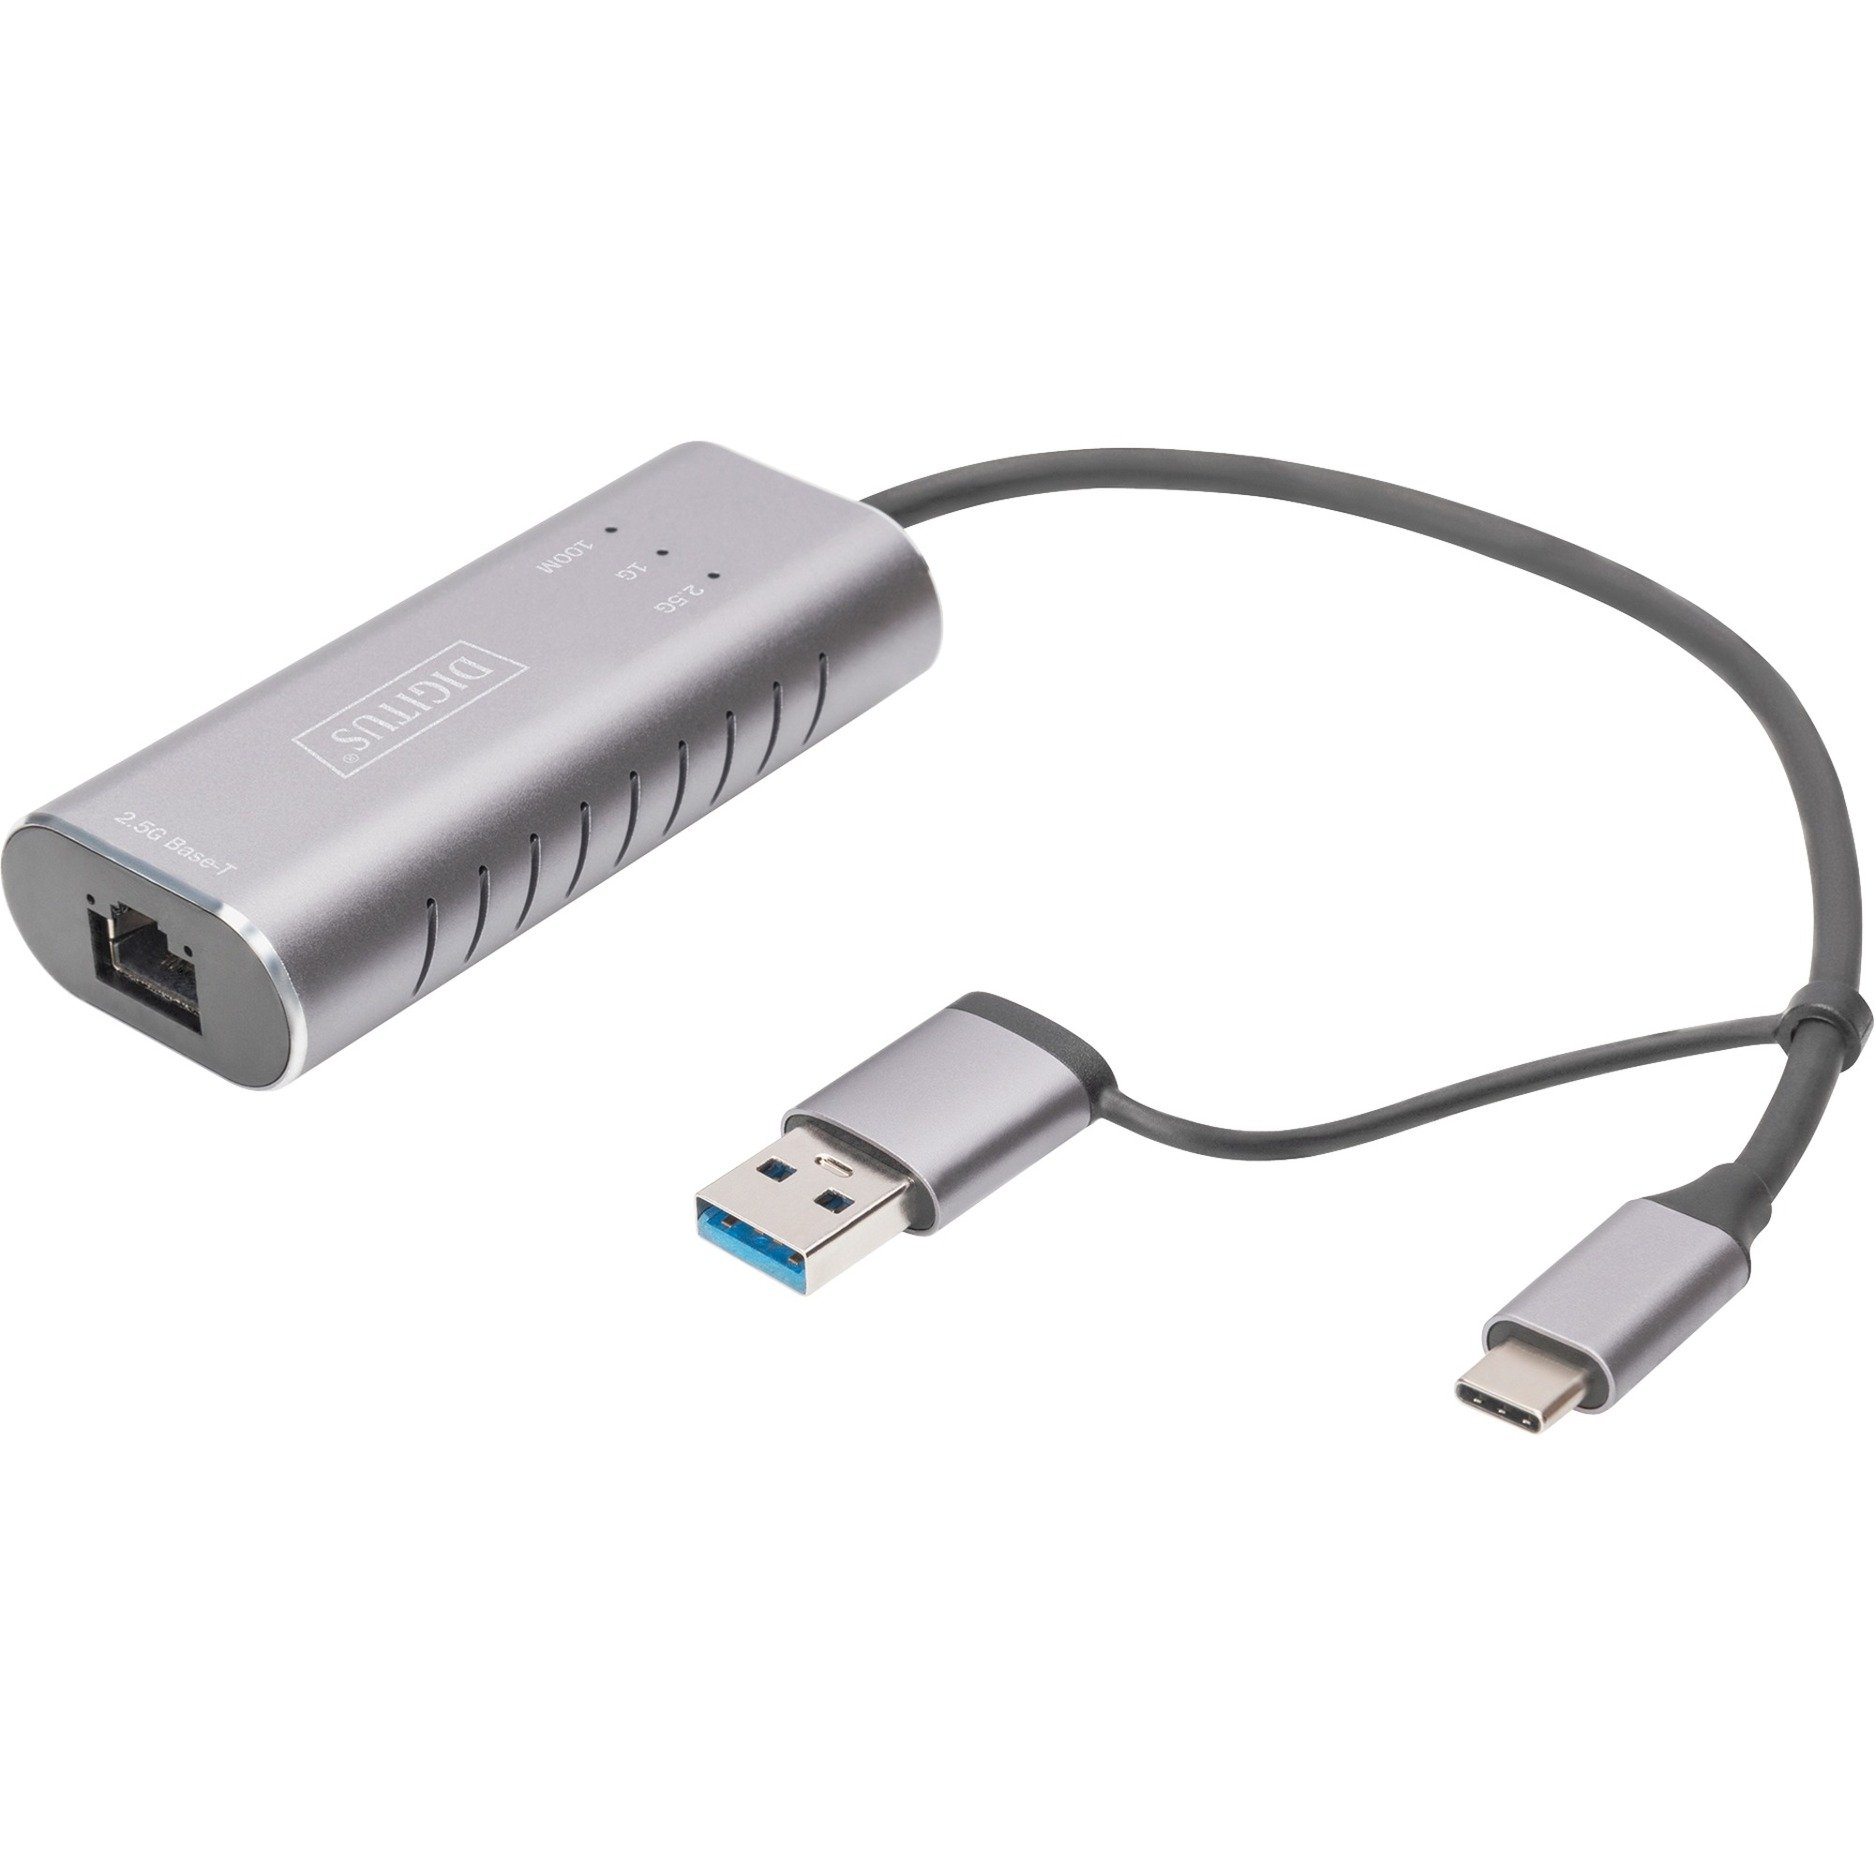 Image of Alternate - Adapter DN-3028, USB-C 3.2 > Gigabit 2,5 Gbps online einkaufen bei Alternate